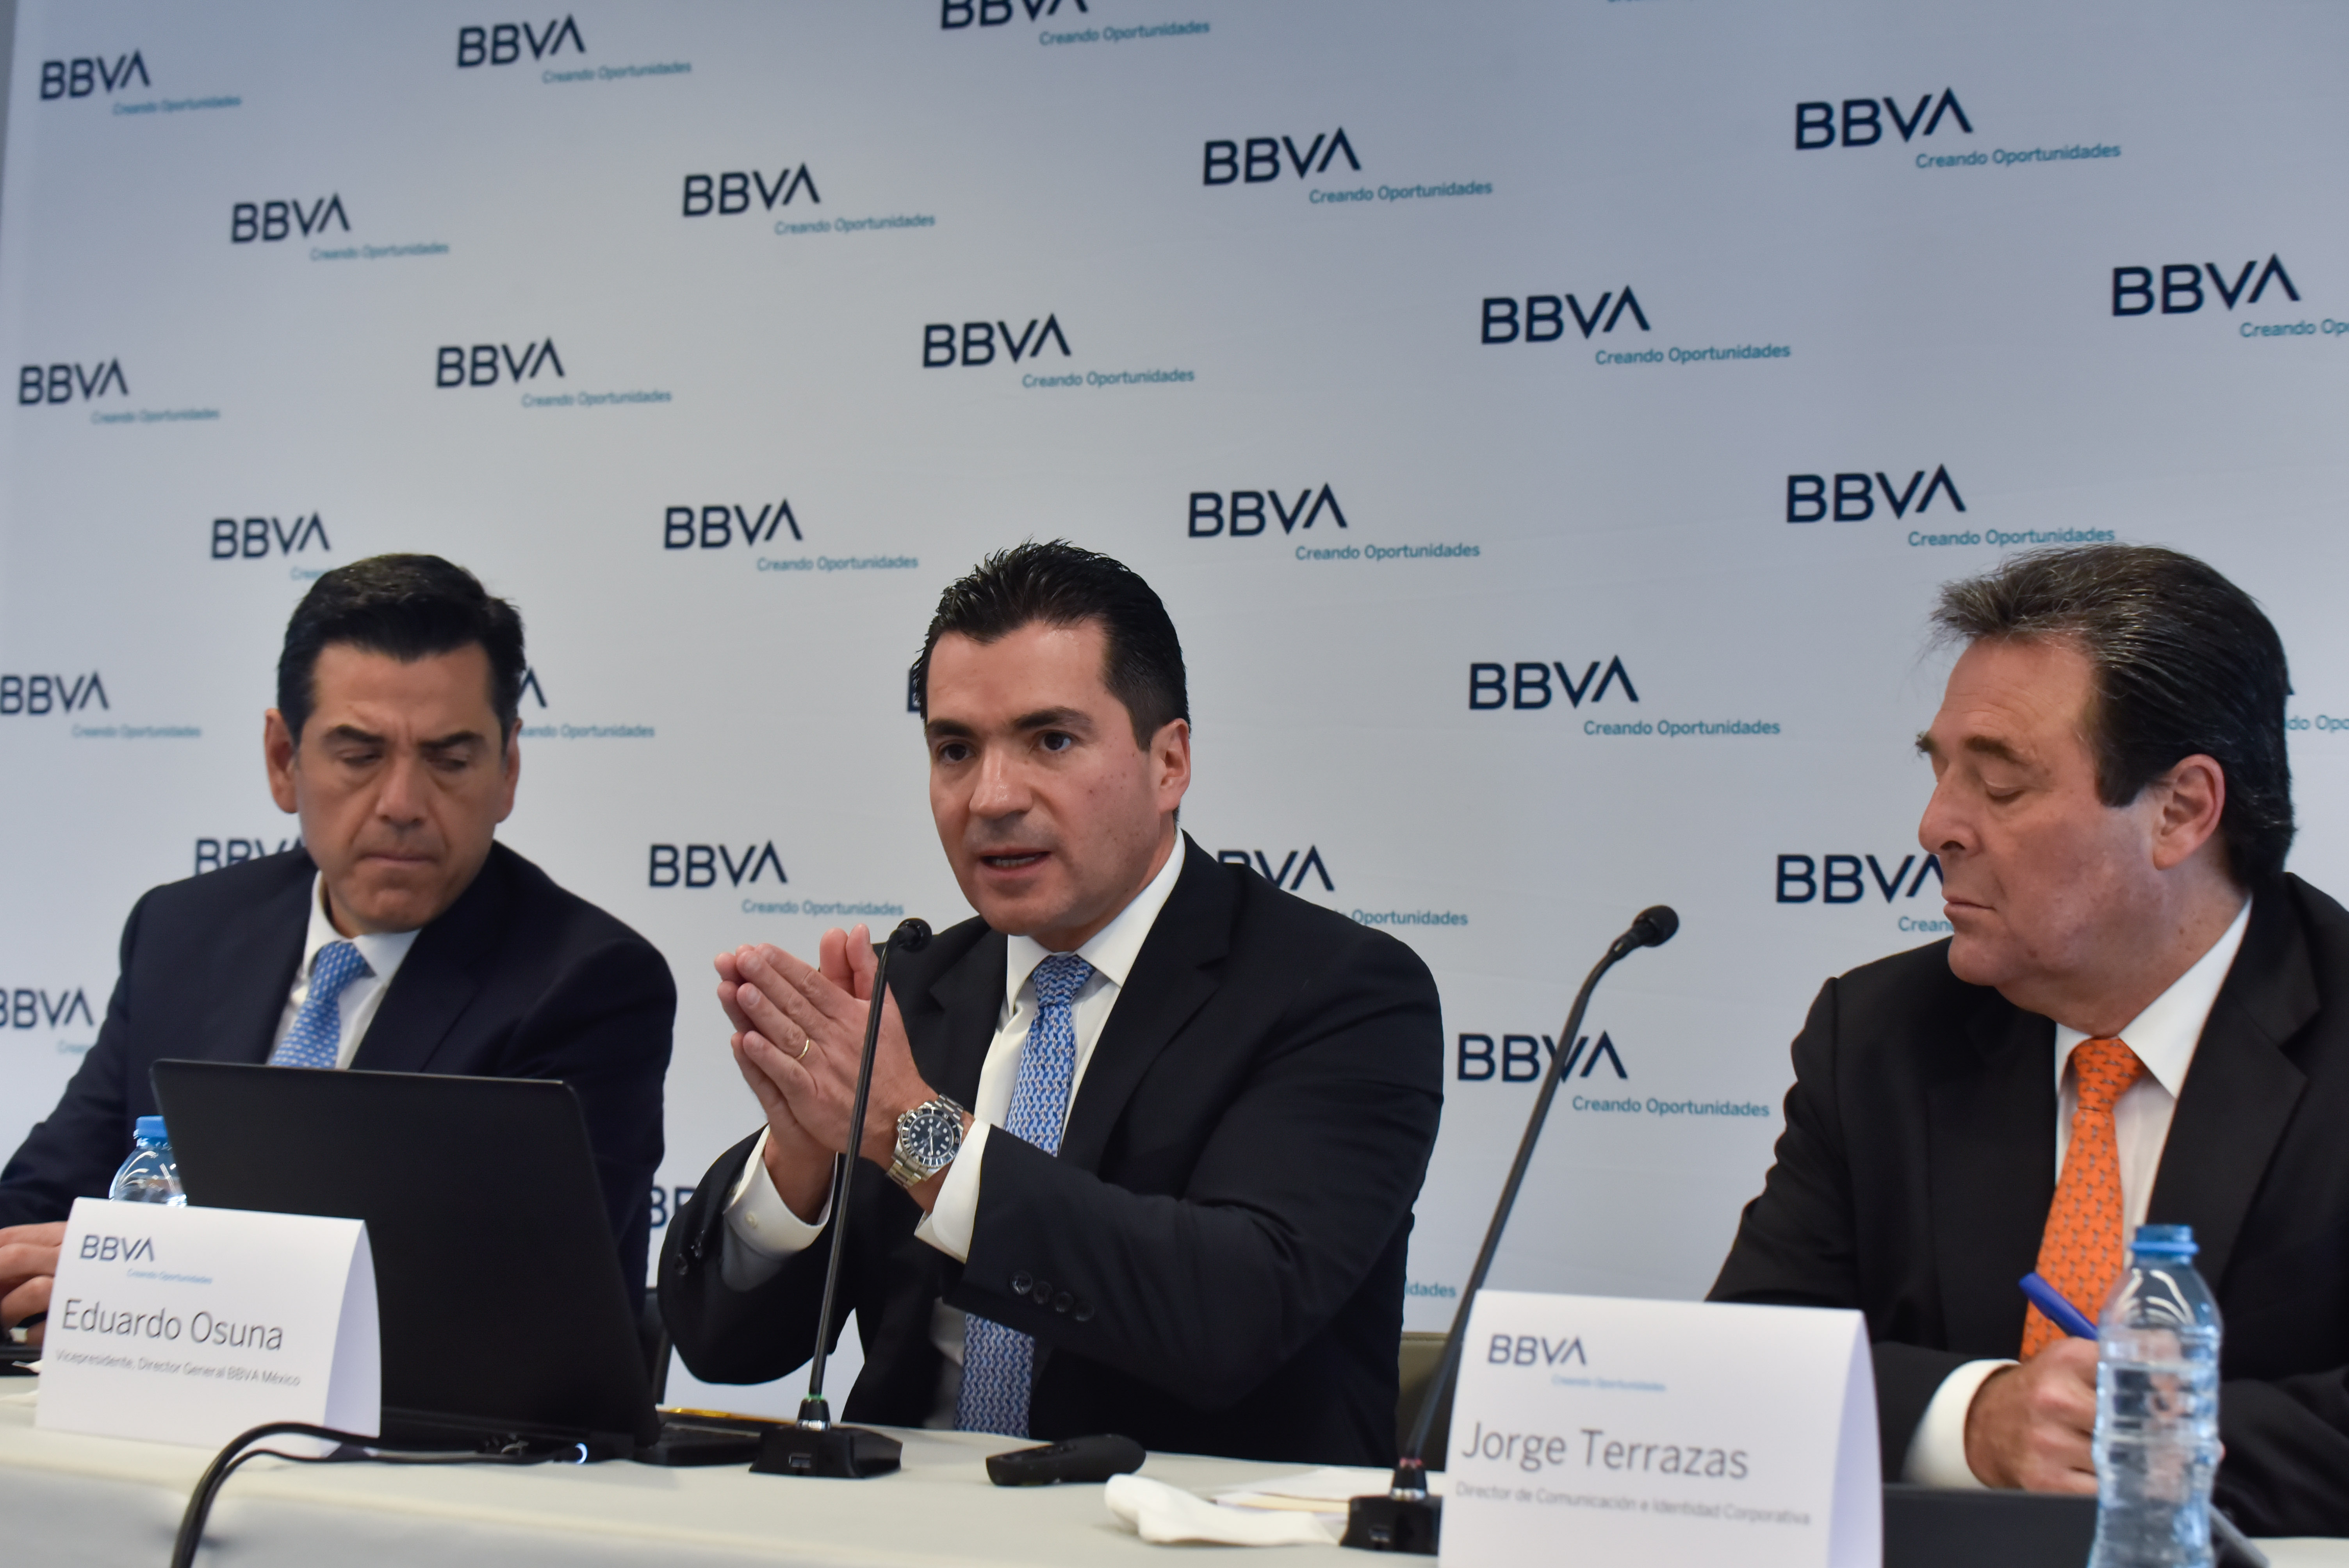 Luis Ignacio de la Luz, director general de Finanzas BBVA; Eduardo Osuna, director general BBVA México, y Jorge Terrazas, director de Comunicación e Identidad Corporativa